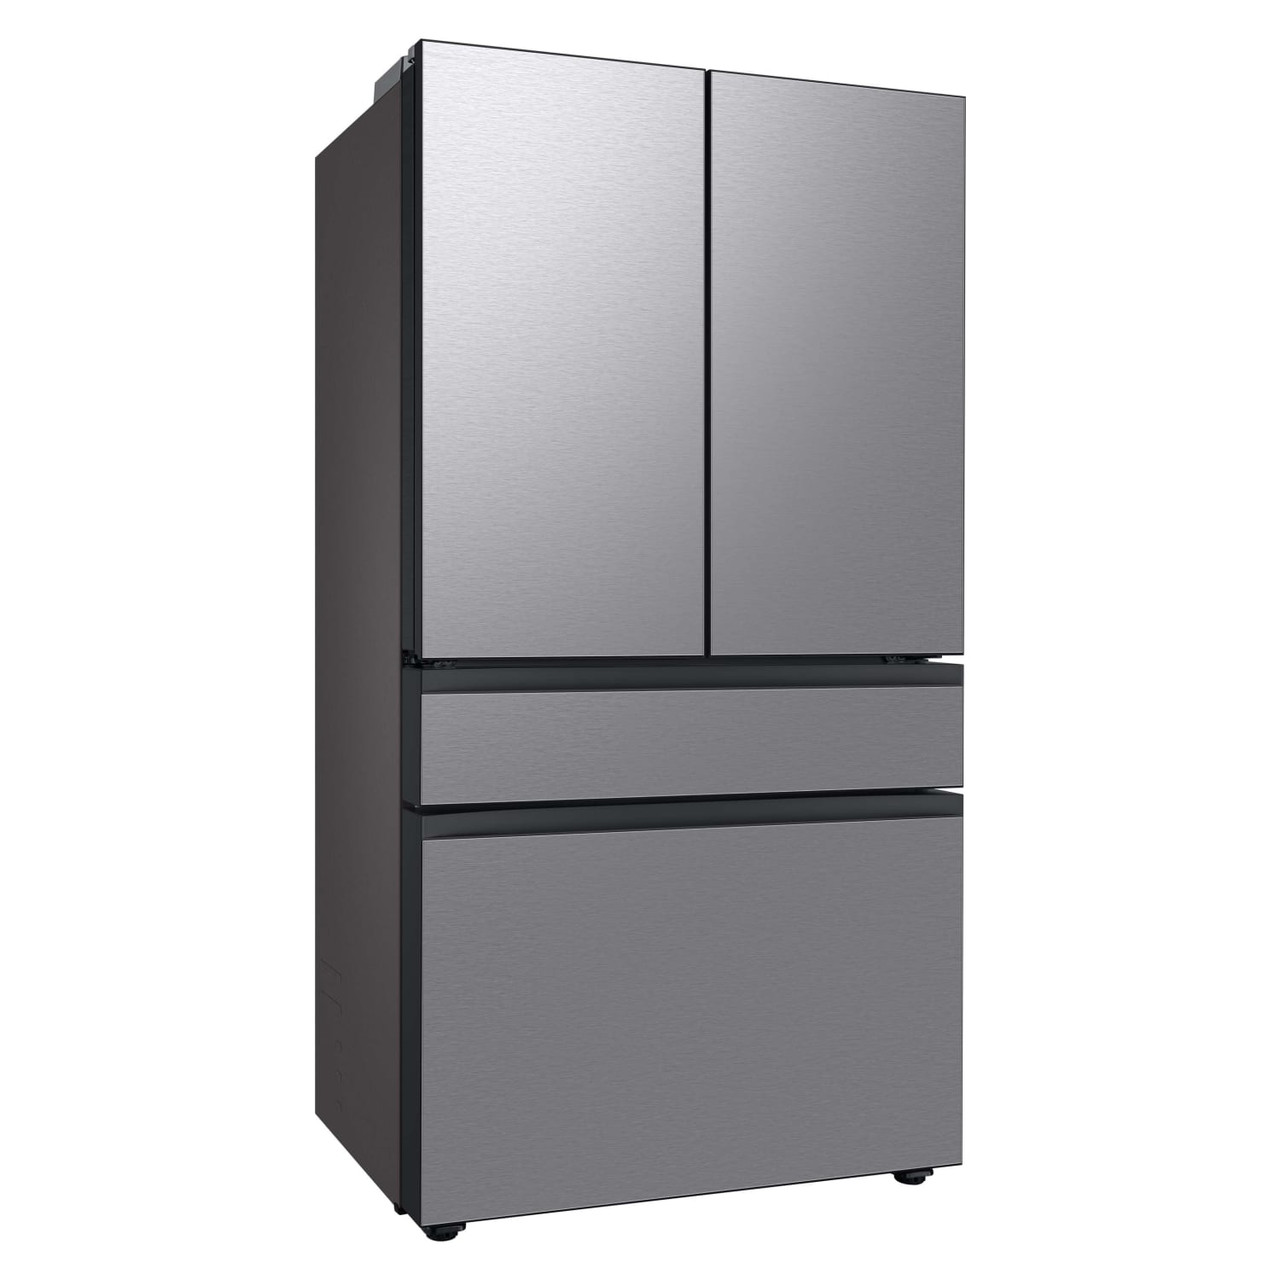 Samsung BESPOKE 23 c.f. Smart 4-Door French-Door Refrigerator in Stainless Steel